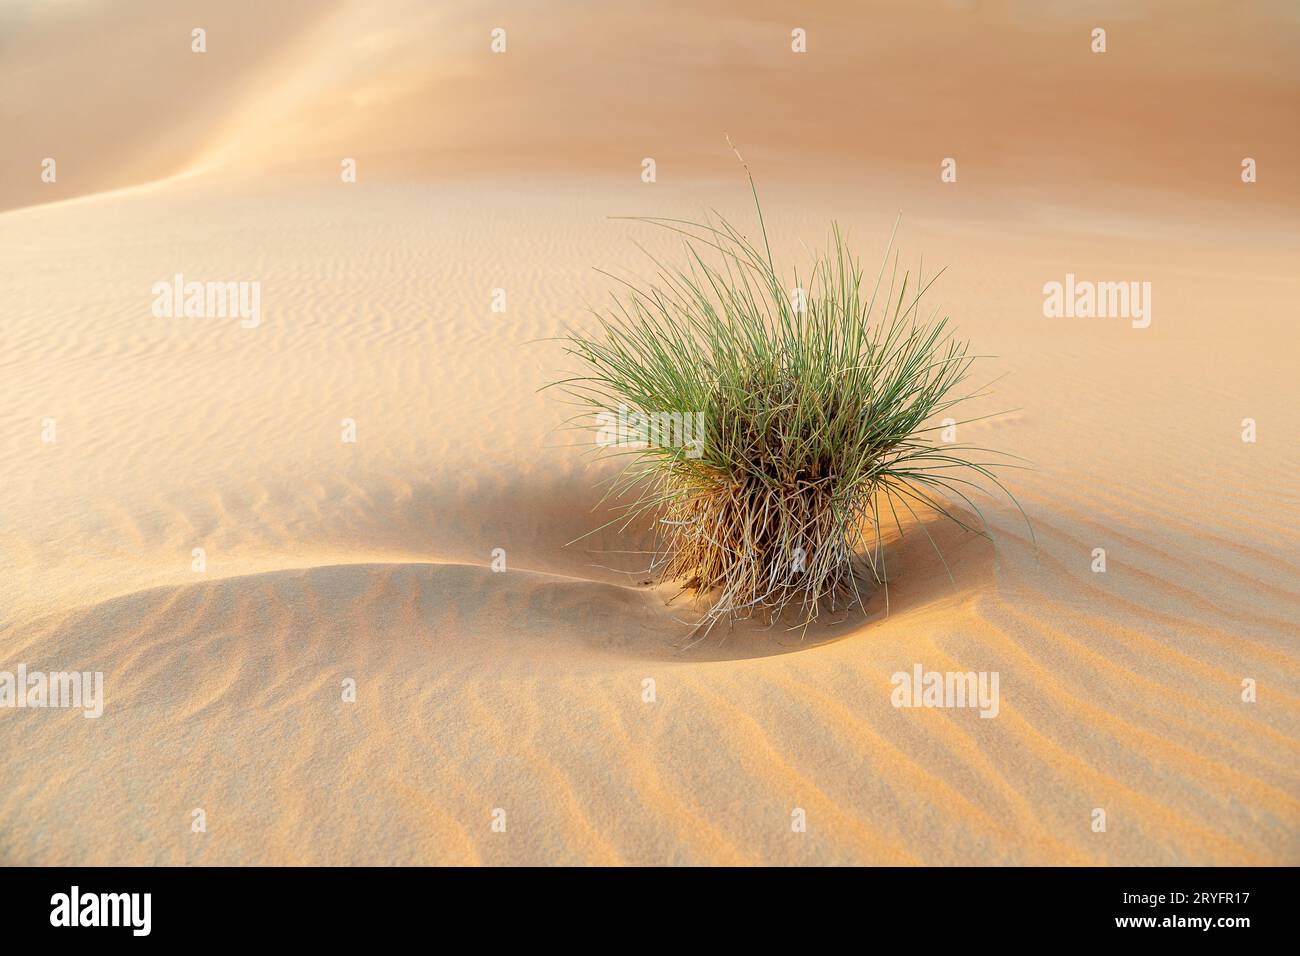 Arbusti desertici tra dune di sabbia a Liwa Abu Dhabi, negli Emirati Arabi Uniti. Splendida scena paesaggistica. Foto Stock